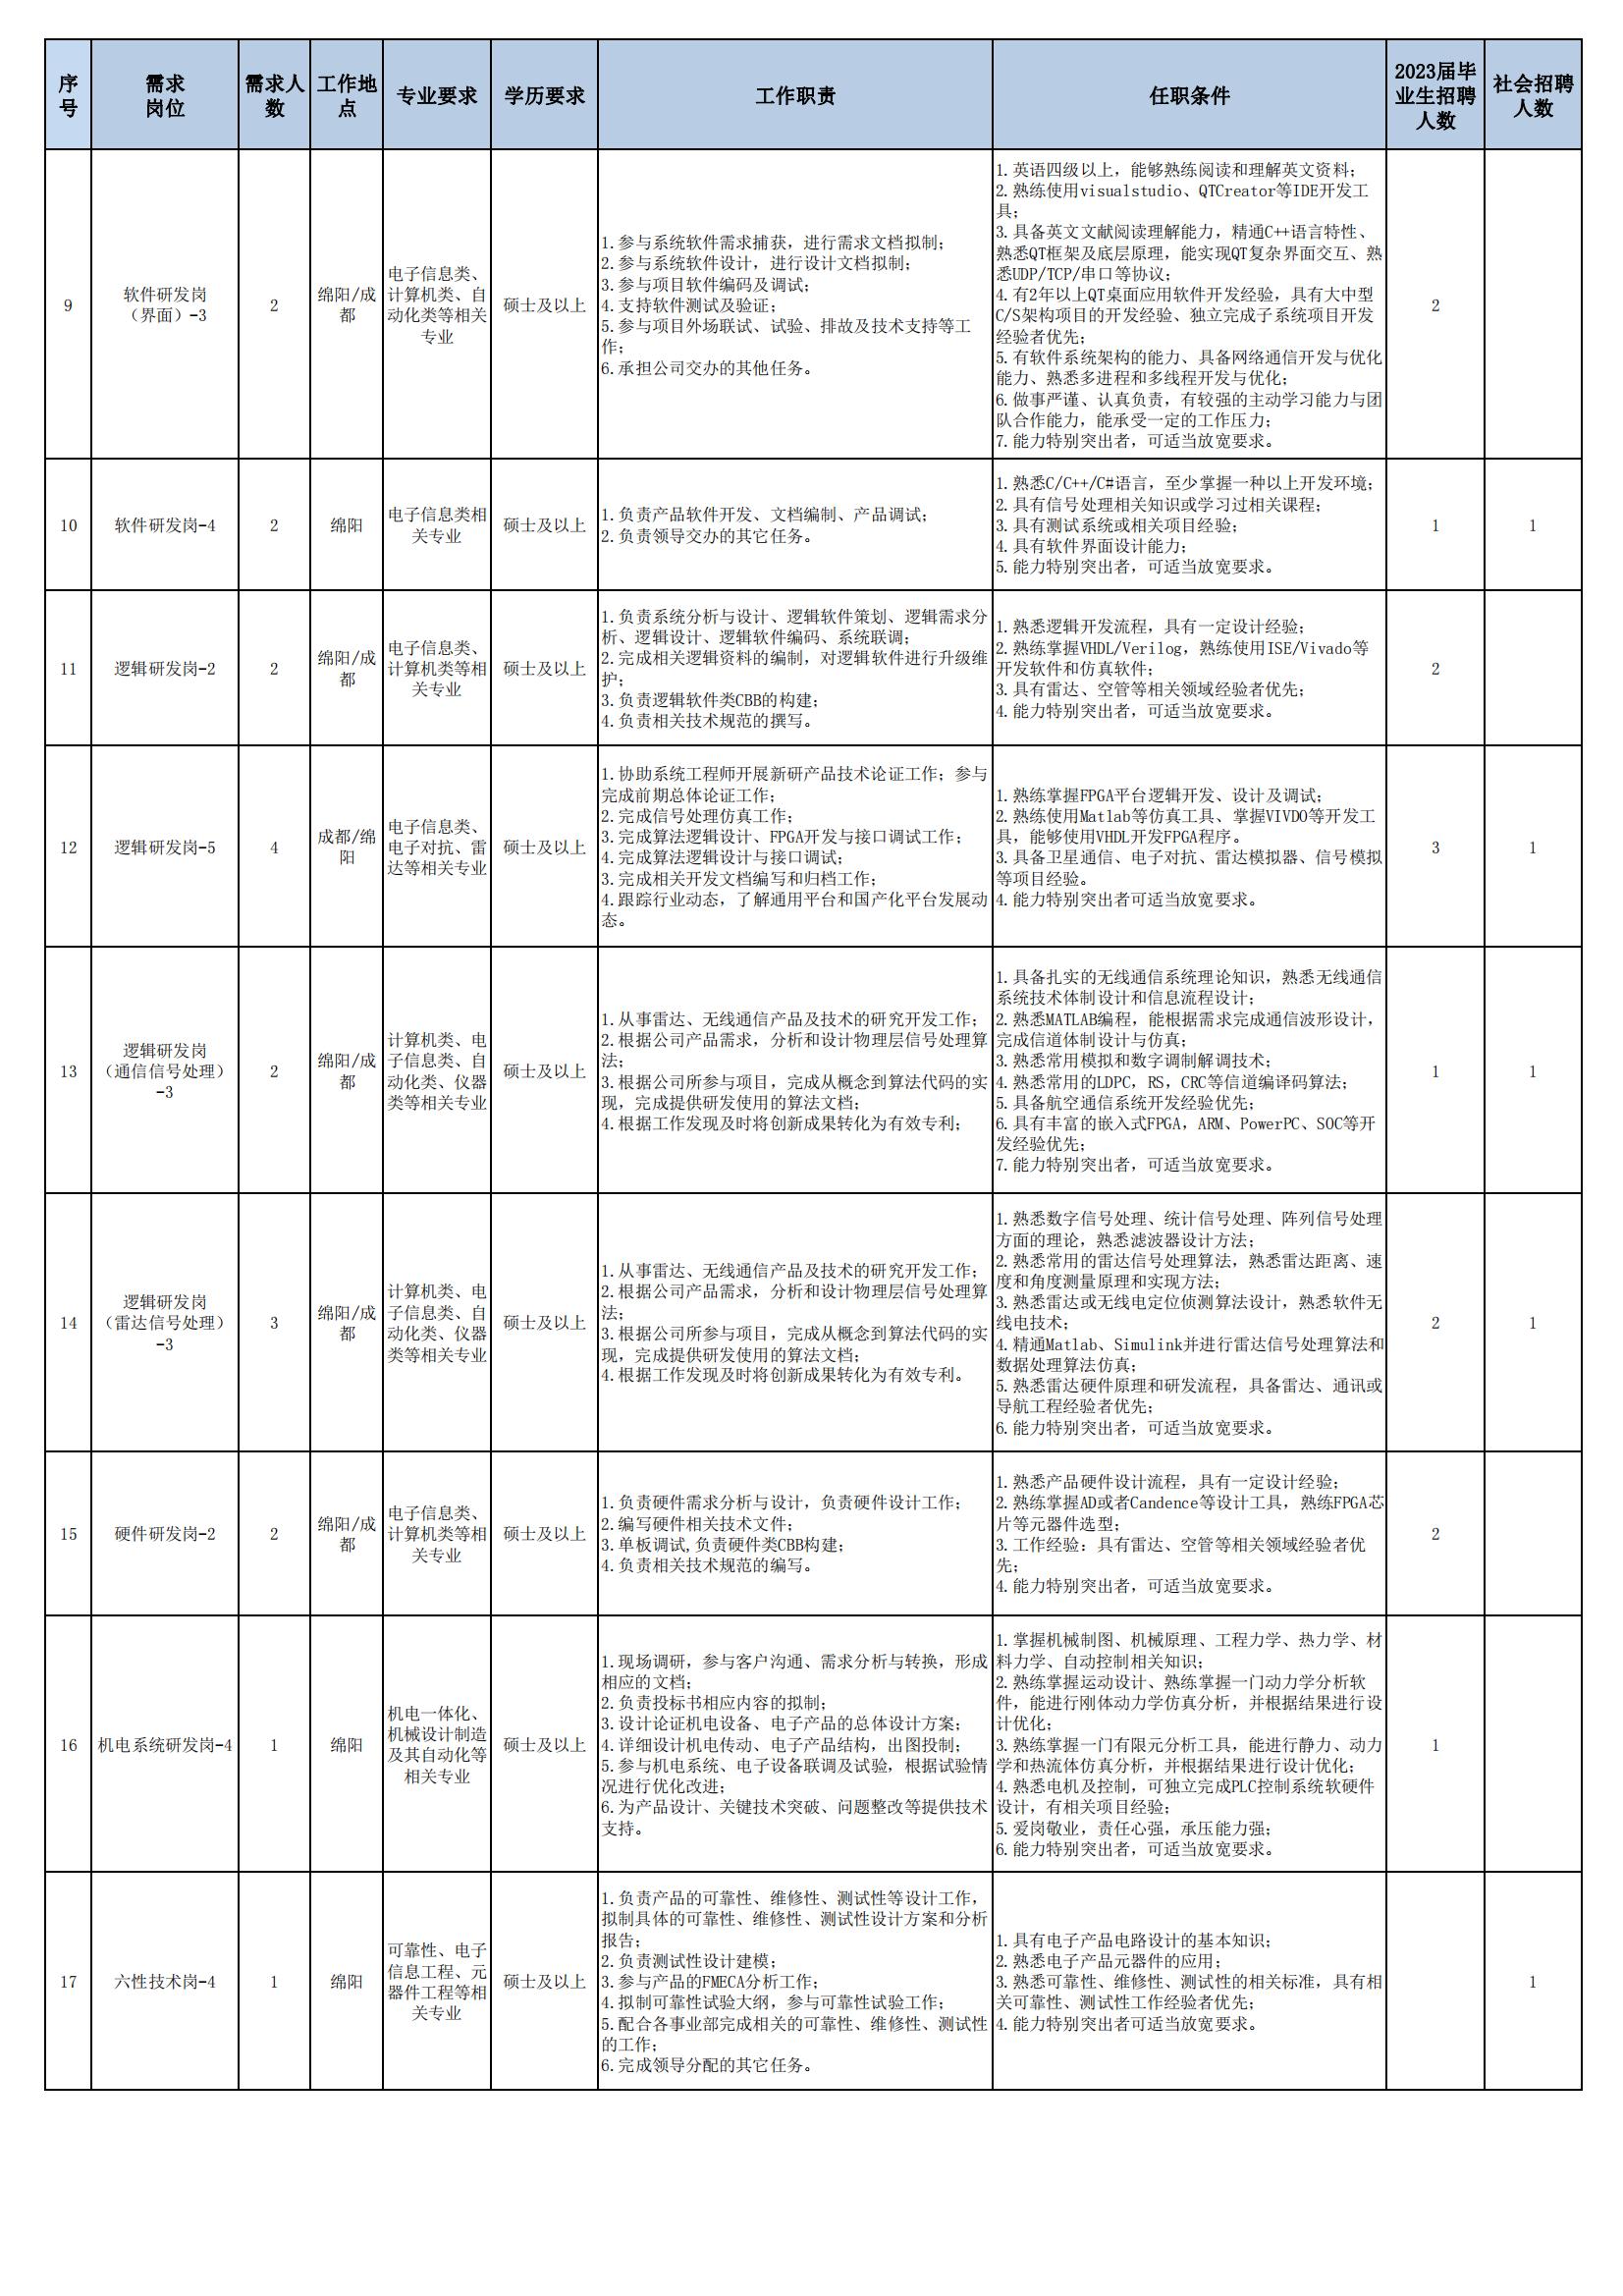 01 四川九洲空管科技有限责任公司招聘岗位列表 - 招聘公告（07月更新）_01.jpg